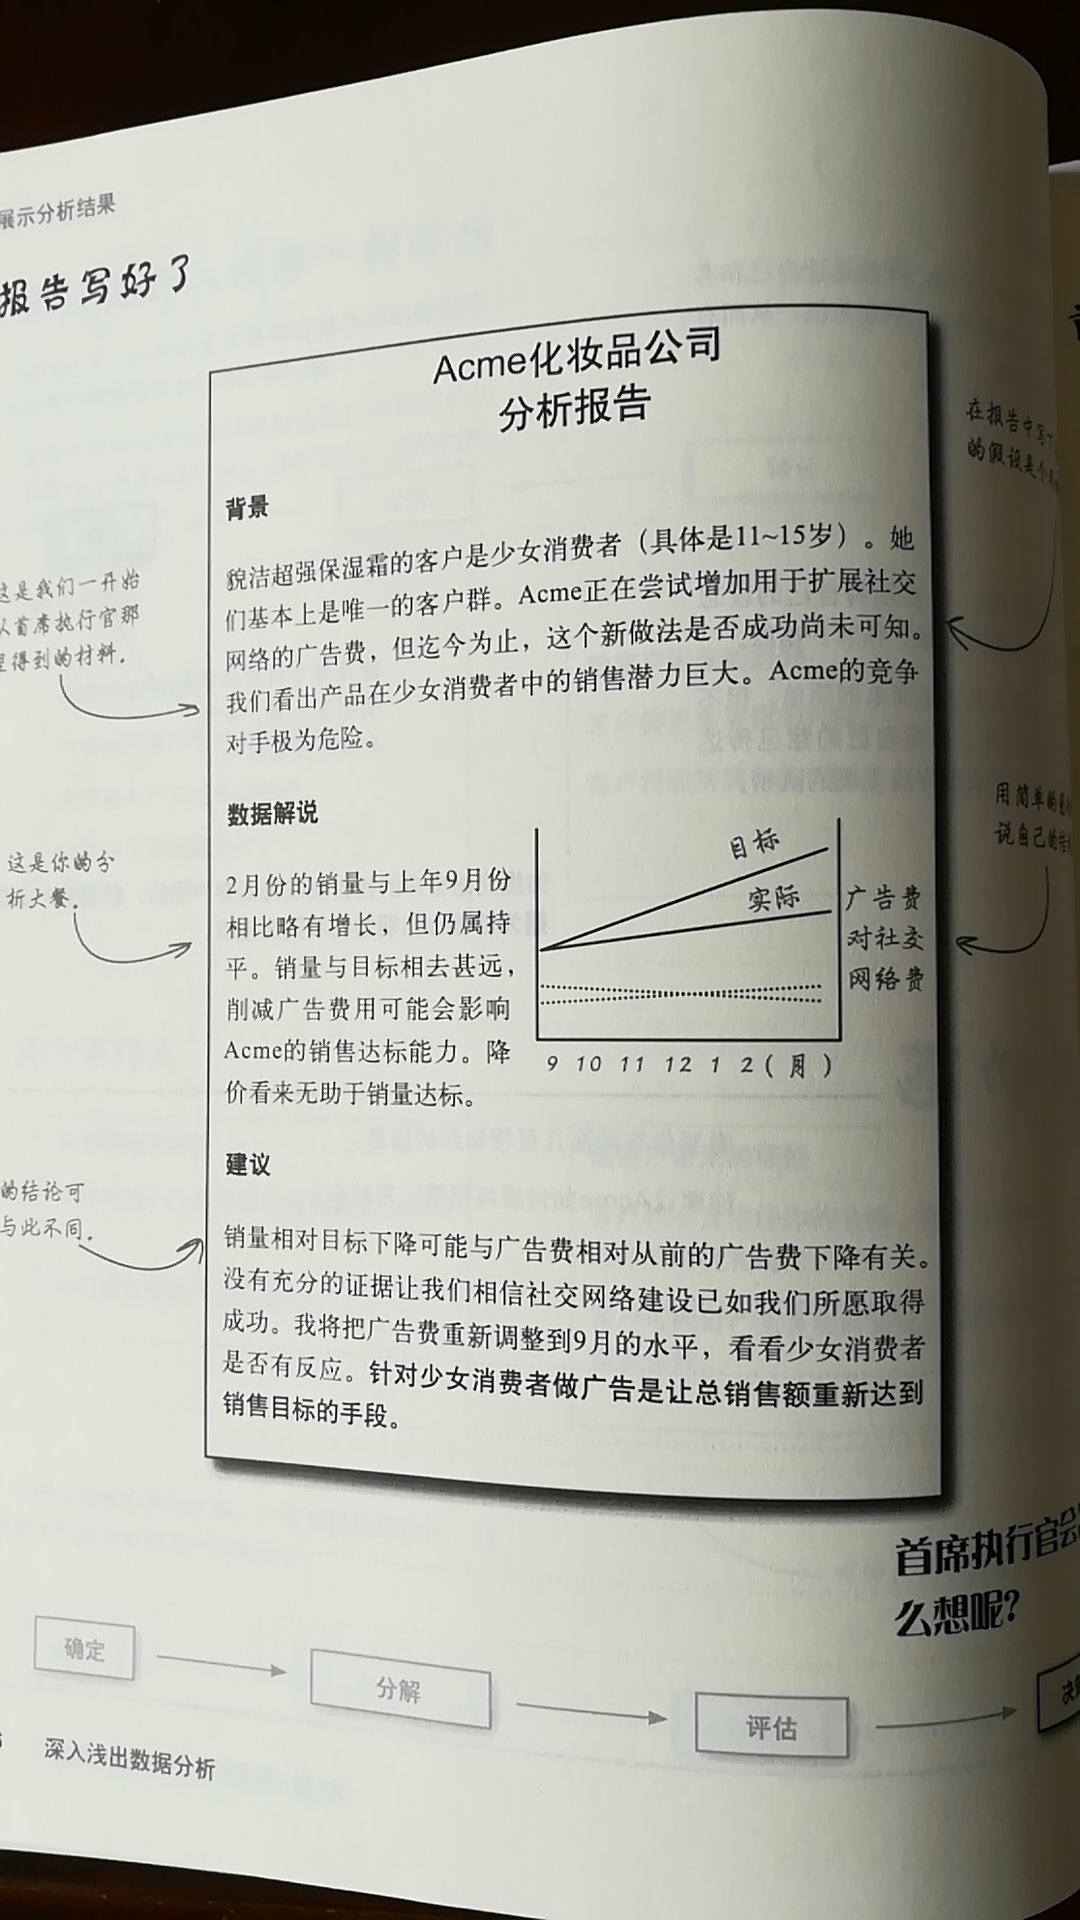 自我感觉书的写法与中国人有很大的不同，但也有些许收获